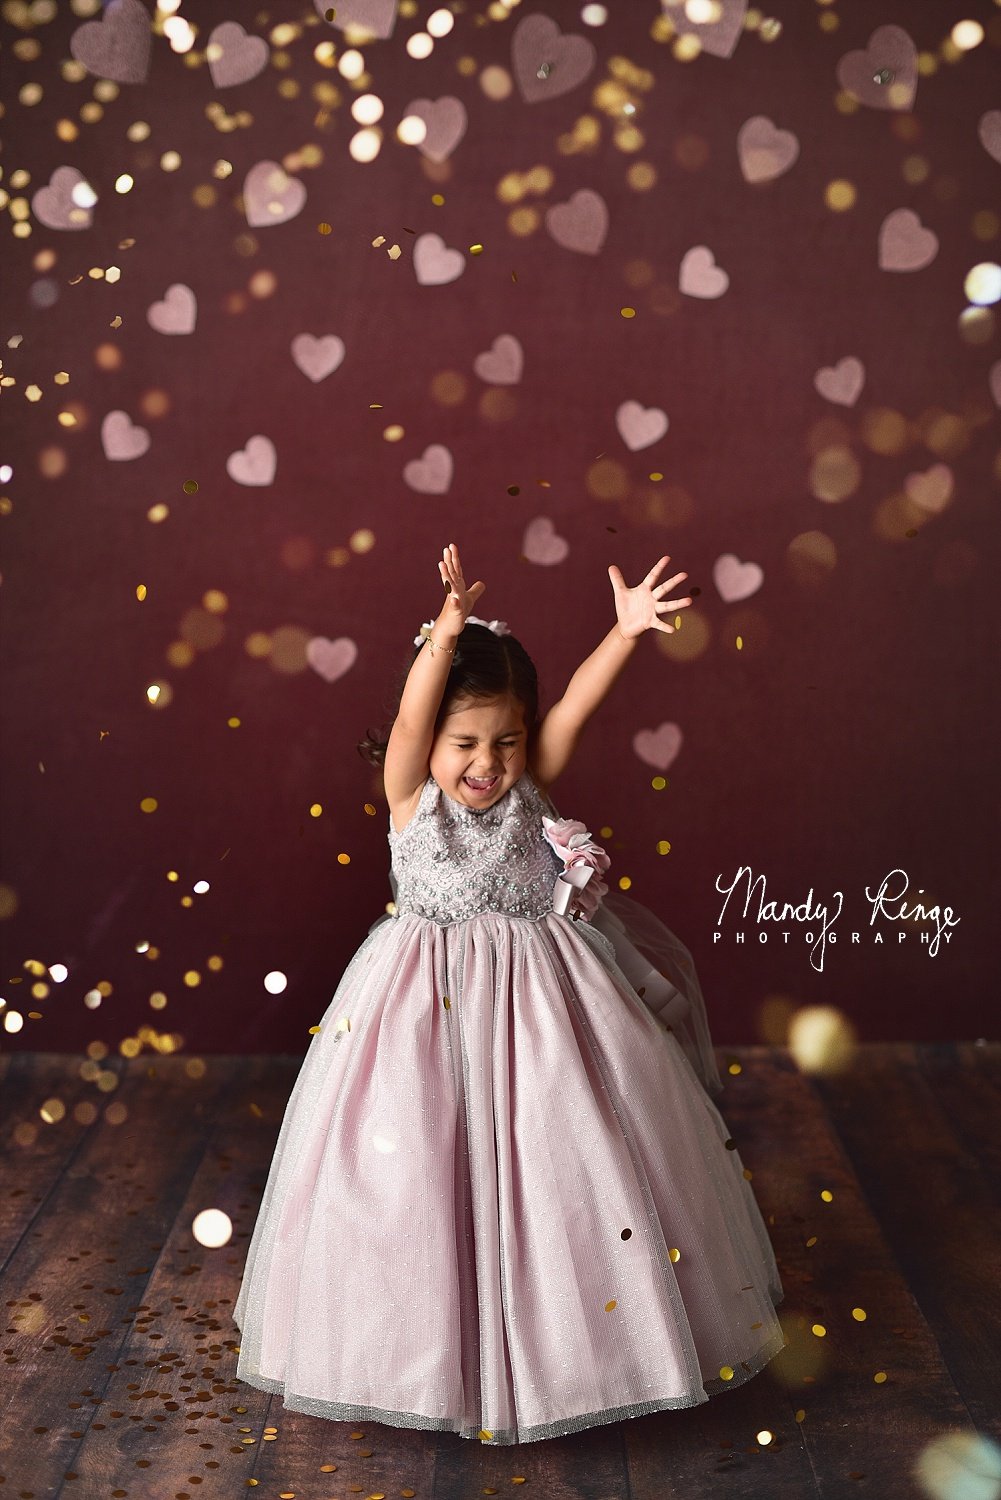 Kate Gold Valentinstag Hintergrund Glitter Herz von Mandy Ringe Fotograf